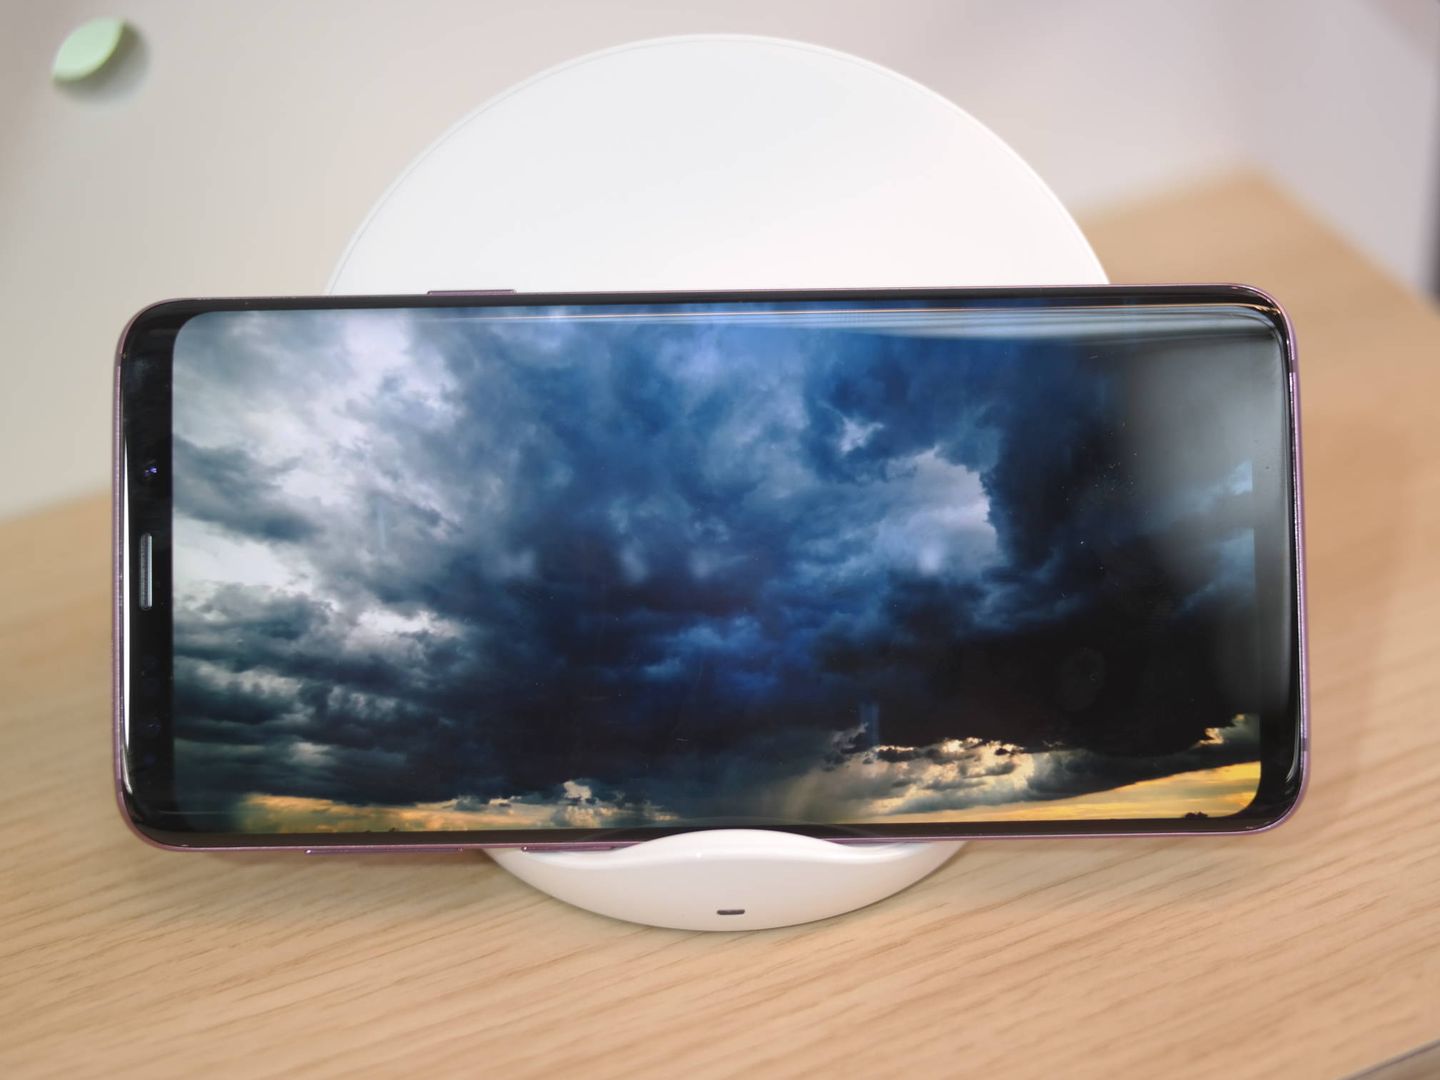 El S9 Plus vuelve a tener una de las mejores pantallas del mercado. (M.Mcloughlin)